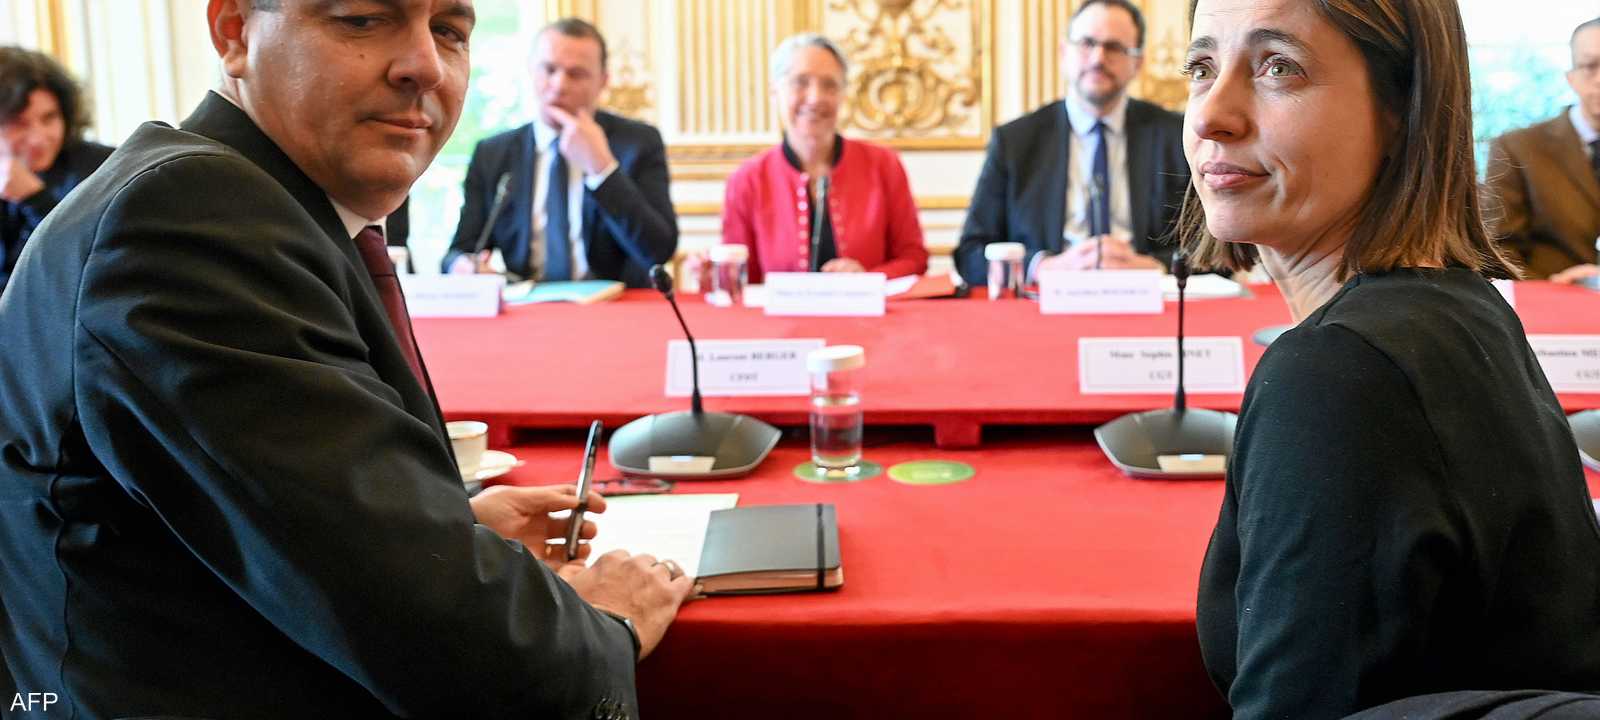 اجتماع بين الحكومة الفرنسية والتجمعات العمالية